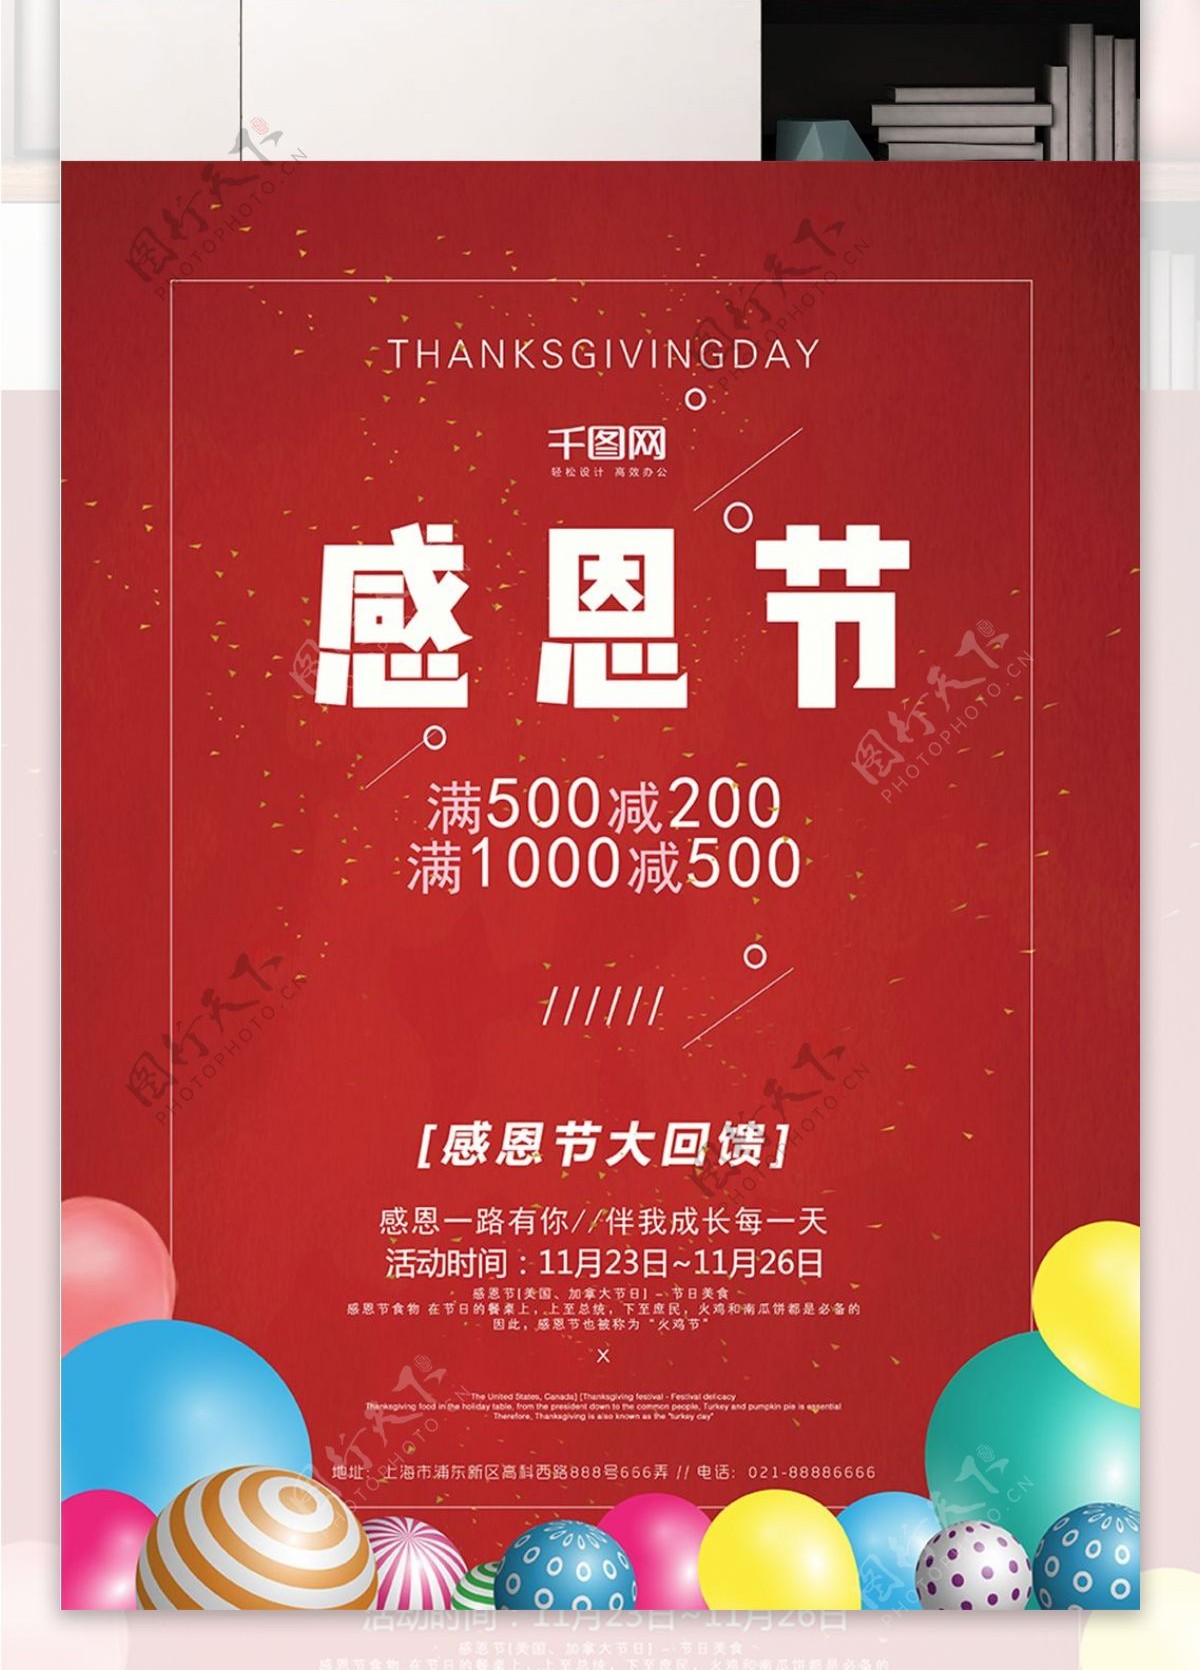 感恩节节日促销促海报设计红色背景